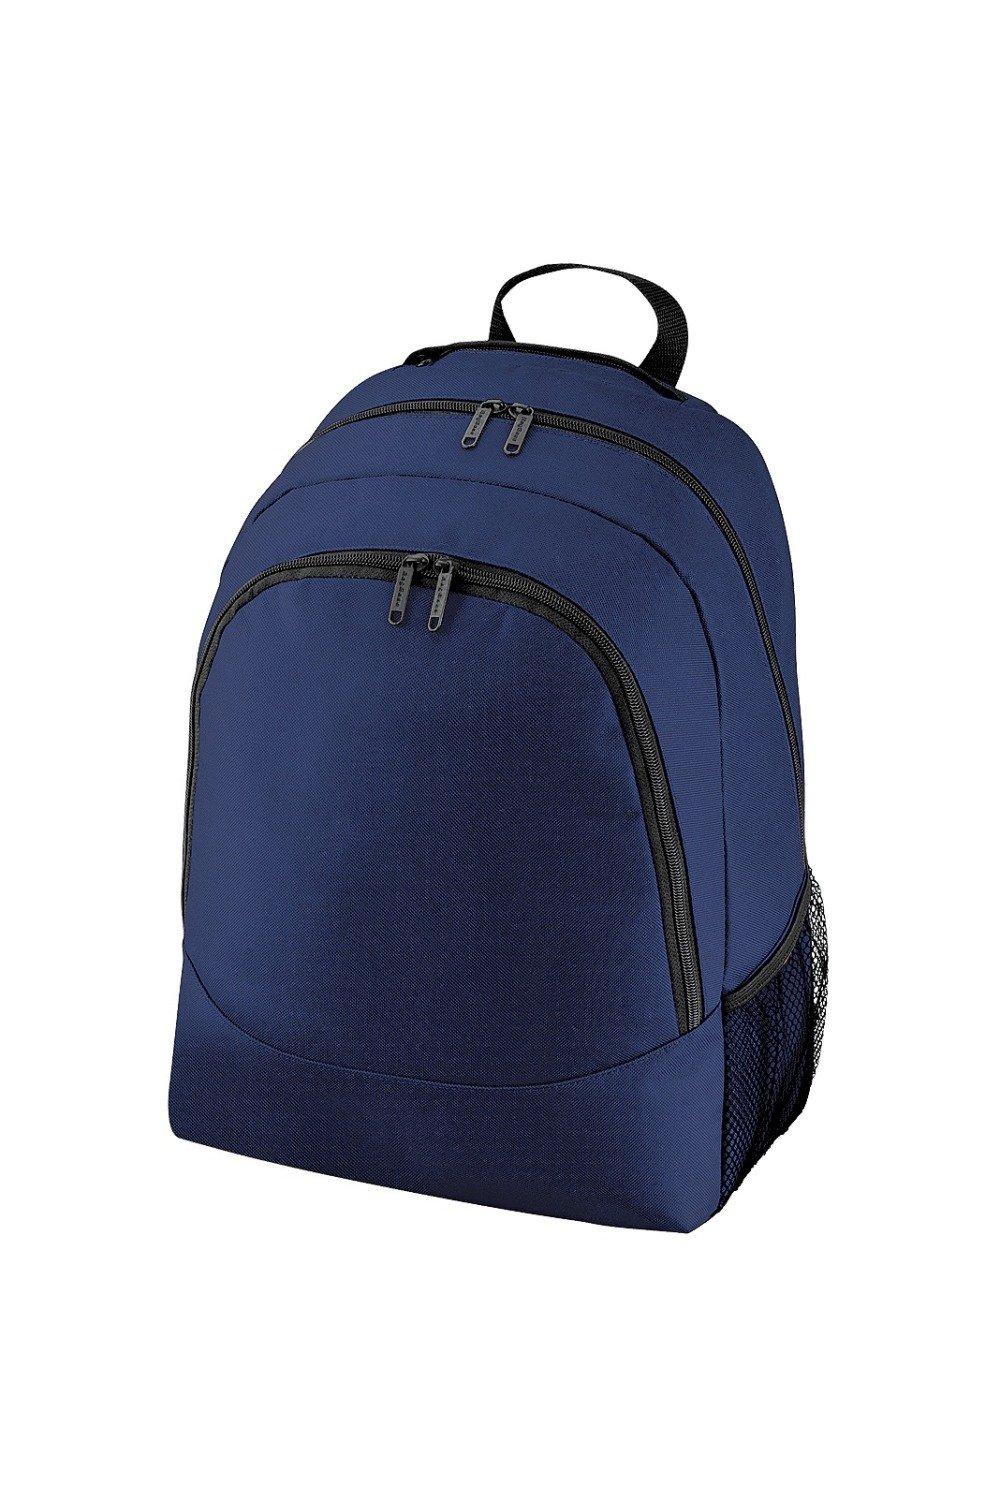 Универсальный многоцелевой рюкзак/рюкзак/сумка (18 литров) (2 шт. в упаковке) Bagbase, темно-синий чехол mypads toyota тойота 2 для tcl 20 5g задняя панель накладка бампер